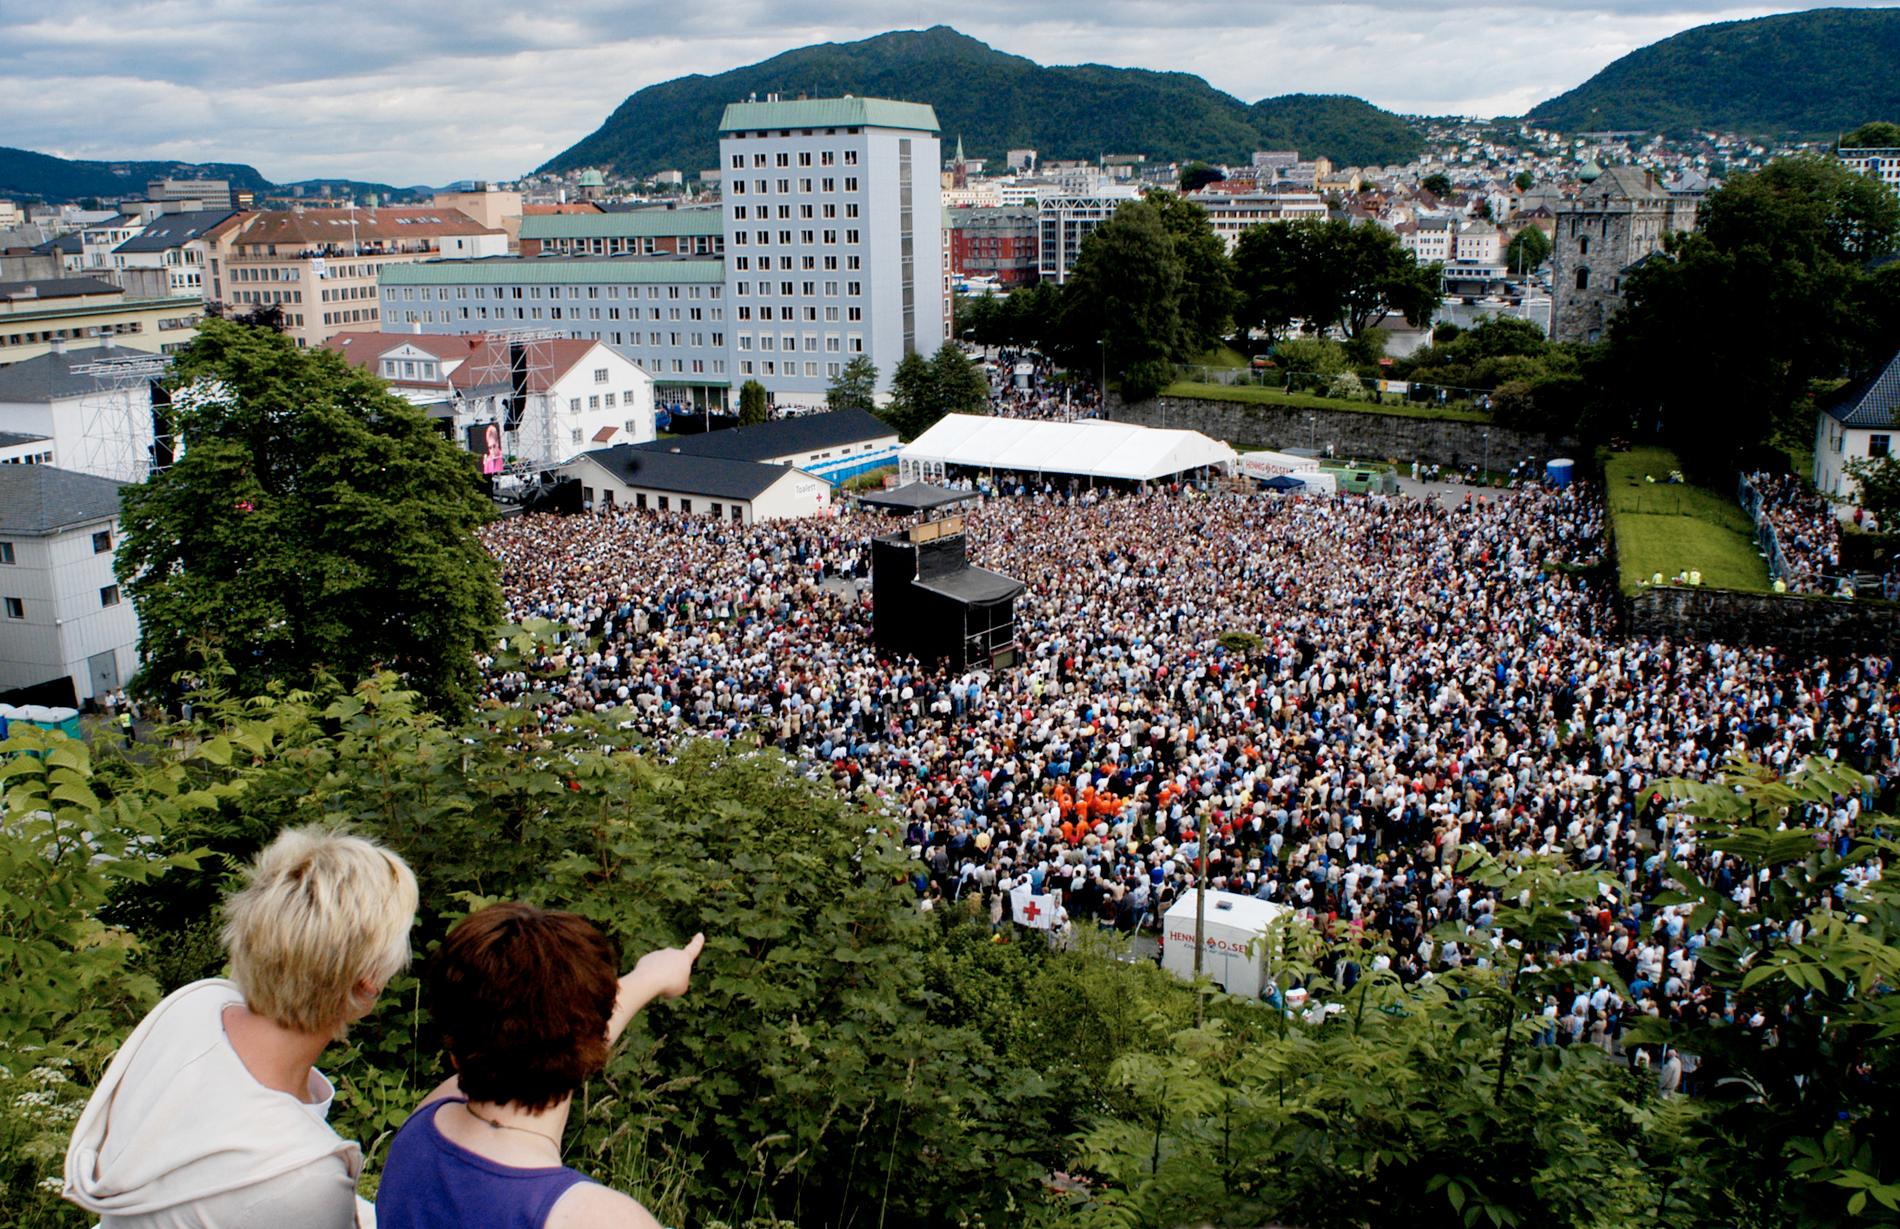 GRATISHAUGEN: Her ser vi utikten fra gratishaugen Sverresborg, like ved Koengen. Bildet er fra da Elton John spilte på Koengen i 2003. 